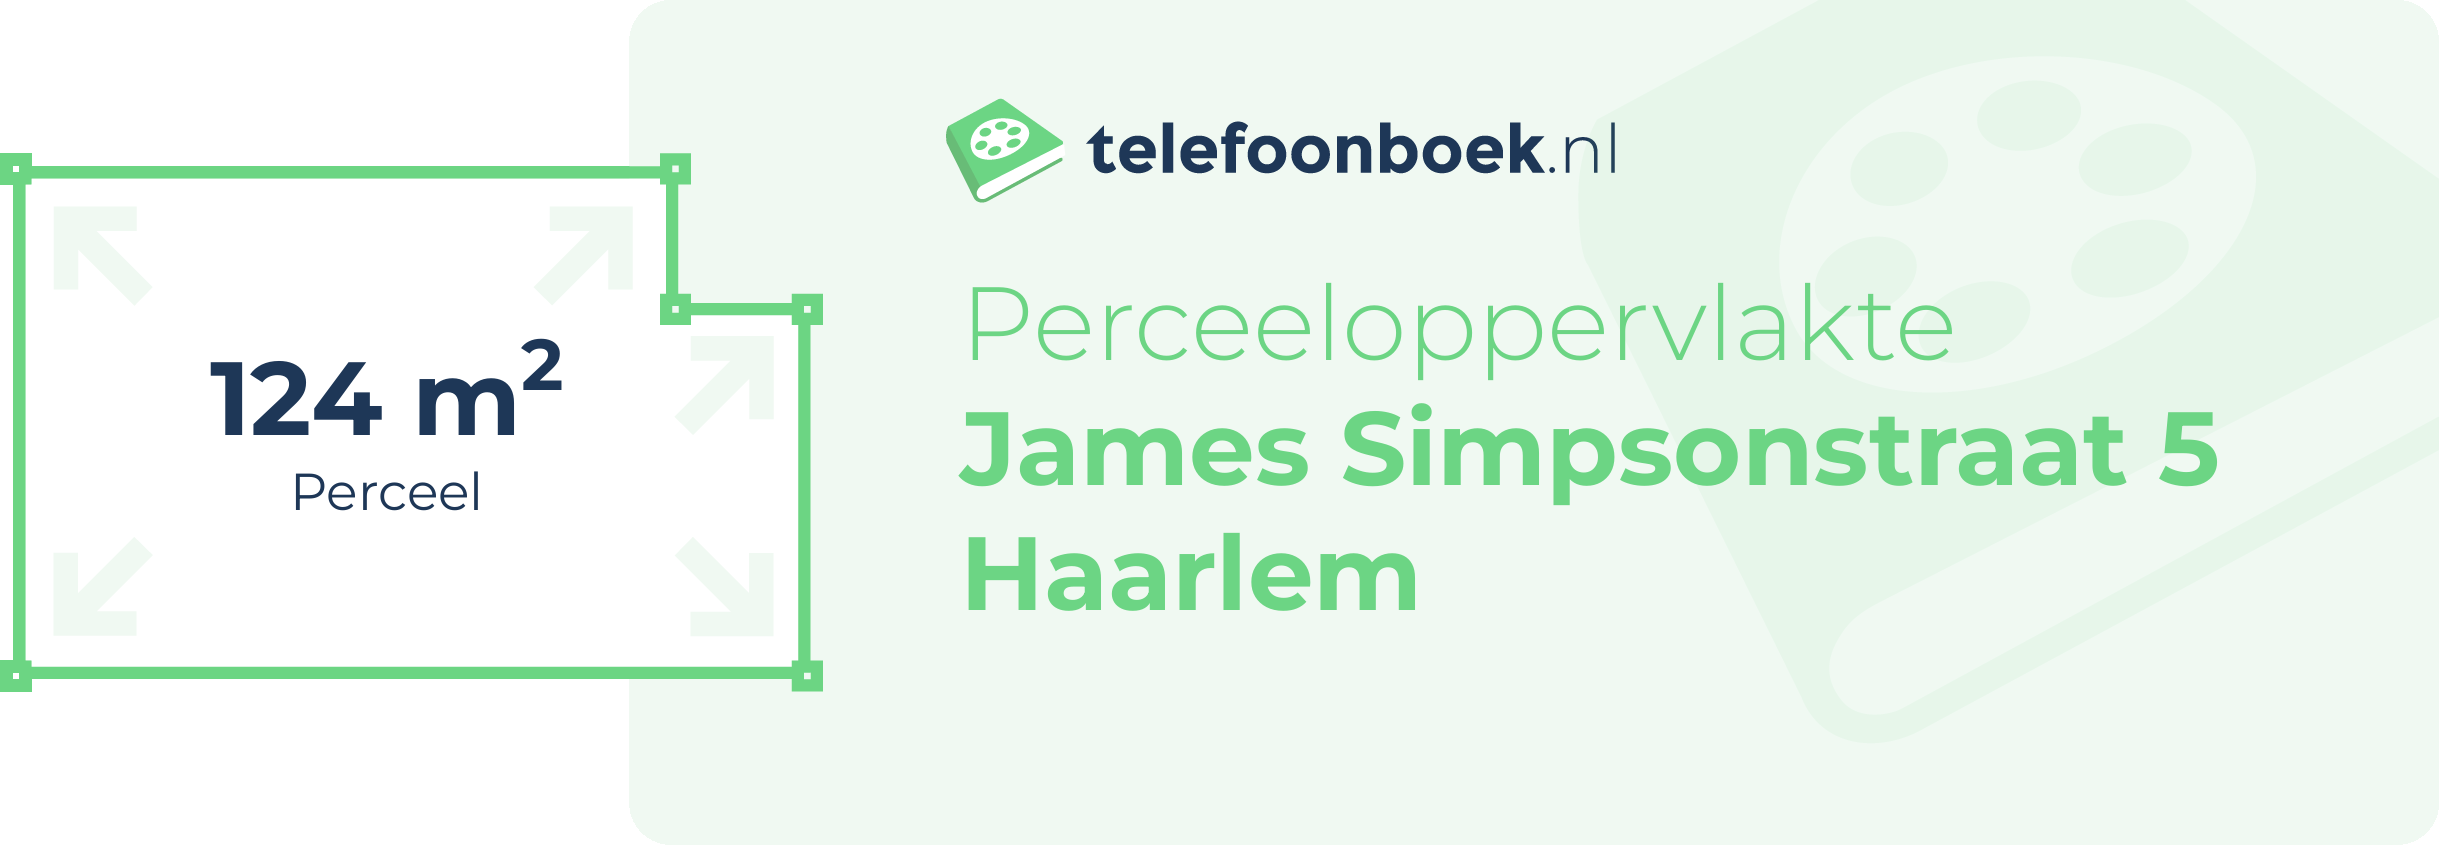 Perceeloppervlakte James Simpsonstraat 5 Haarlem